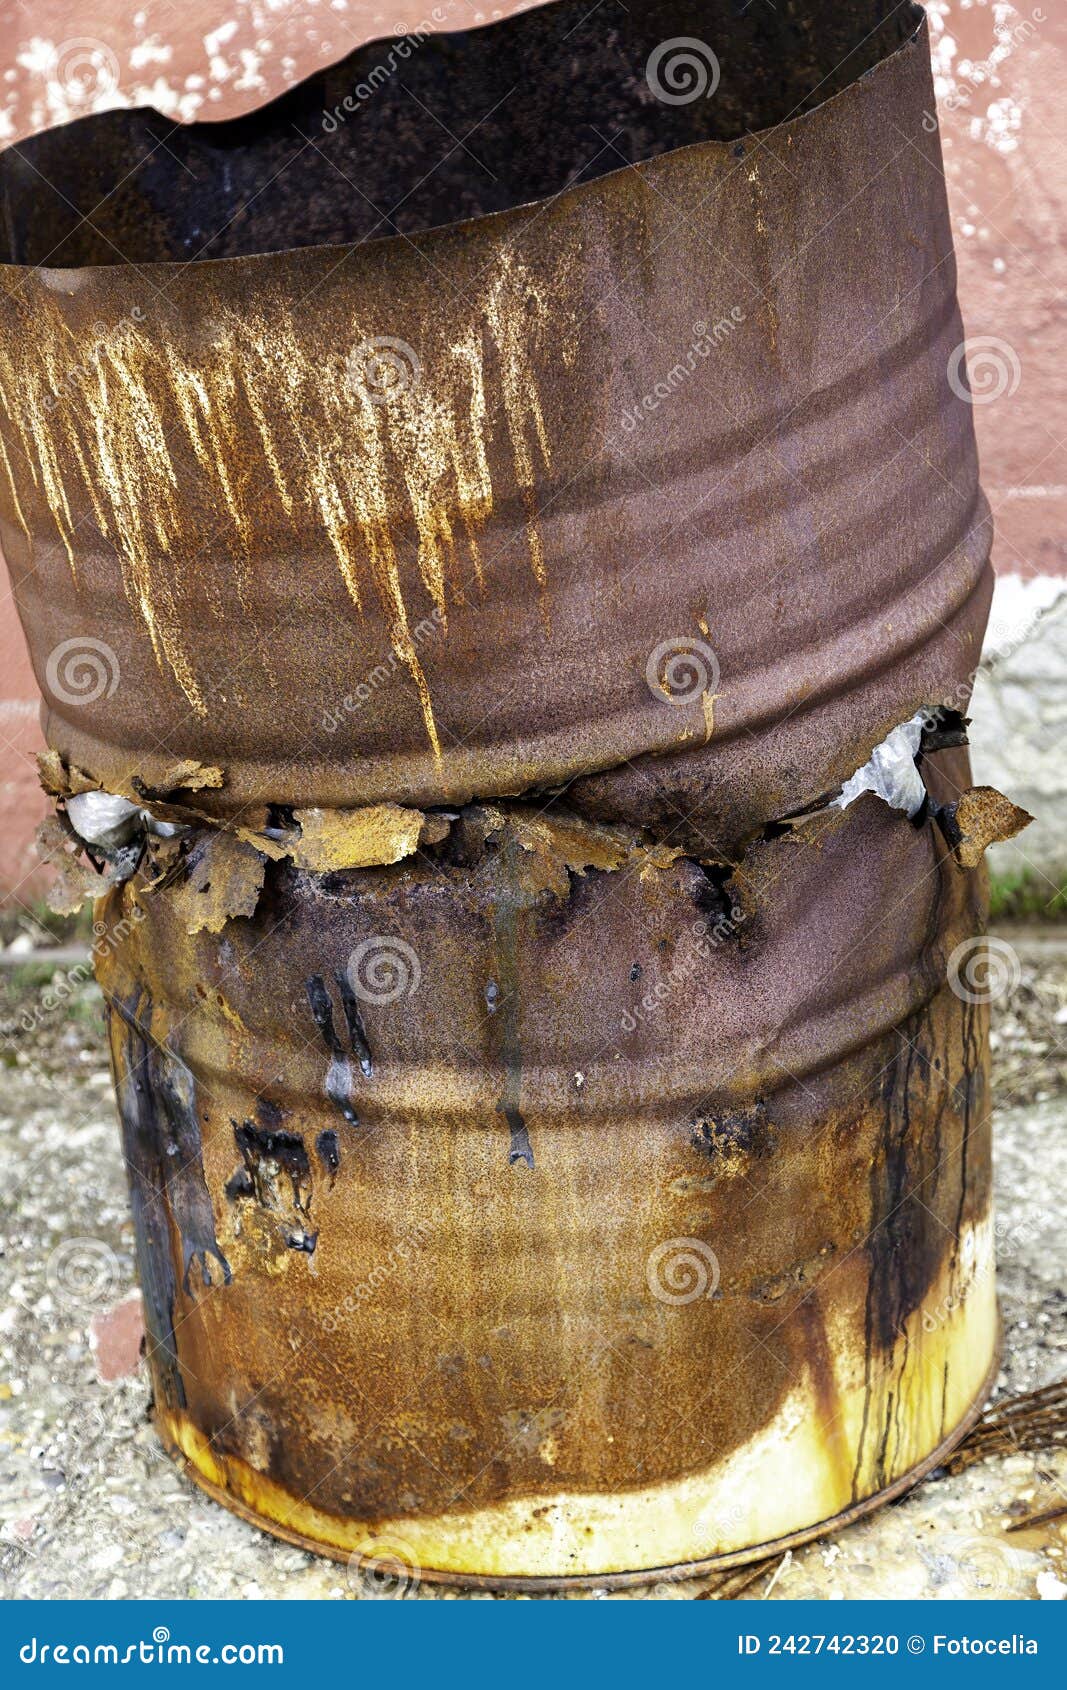 rusty metal barrel